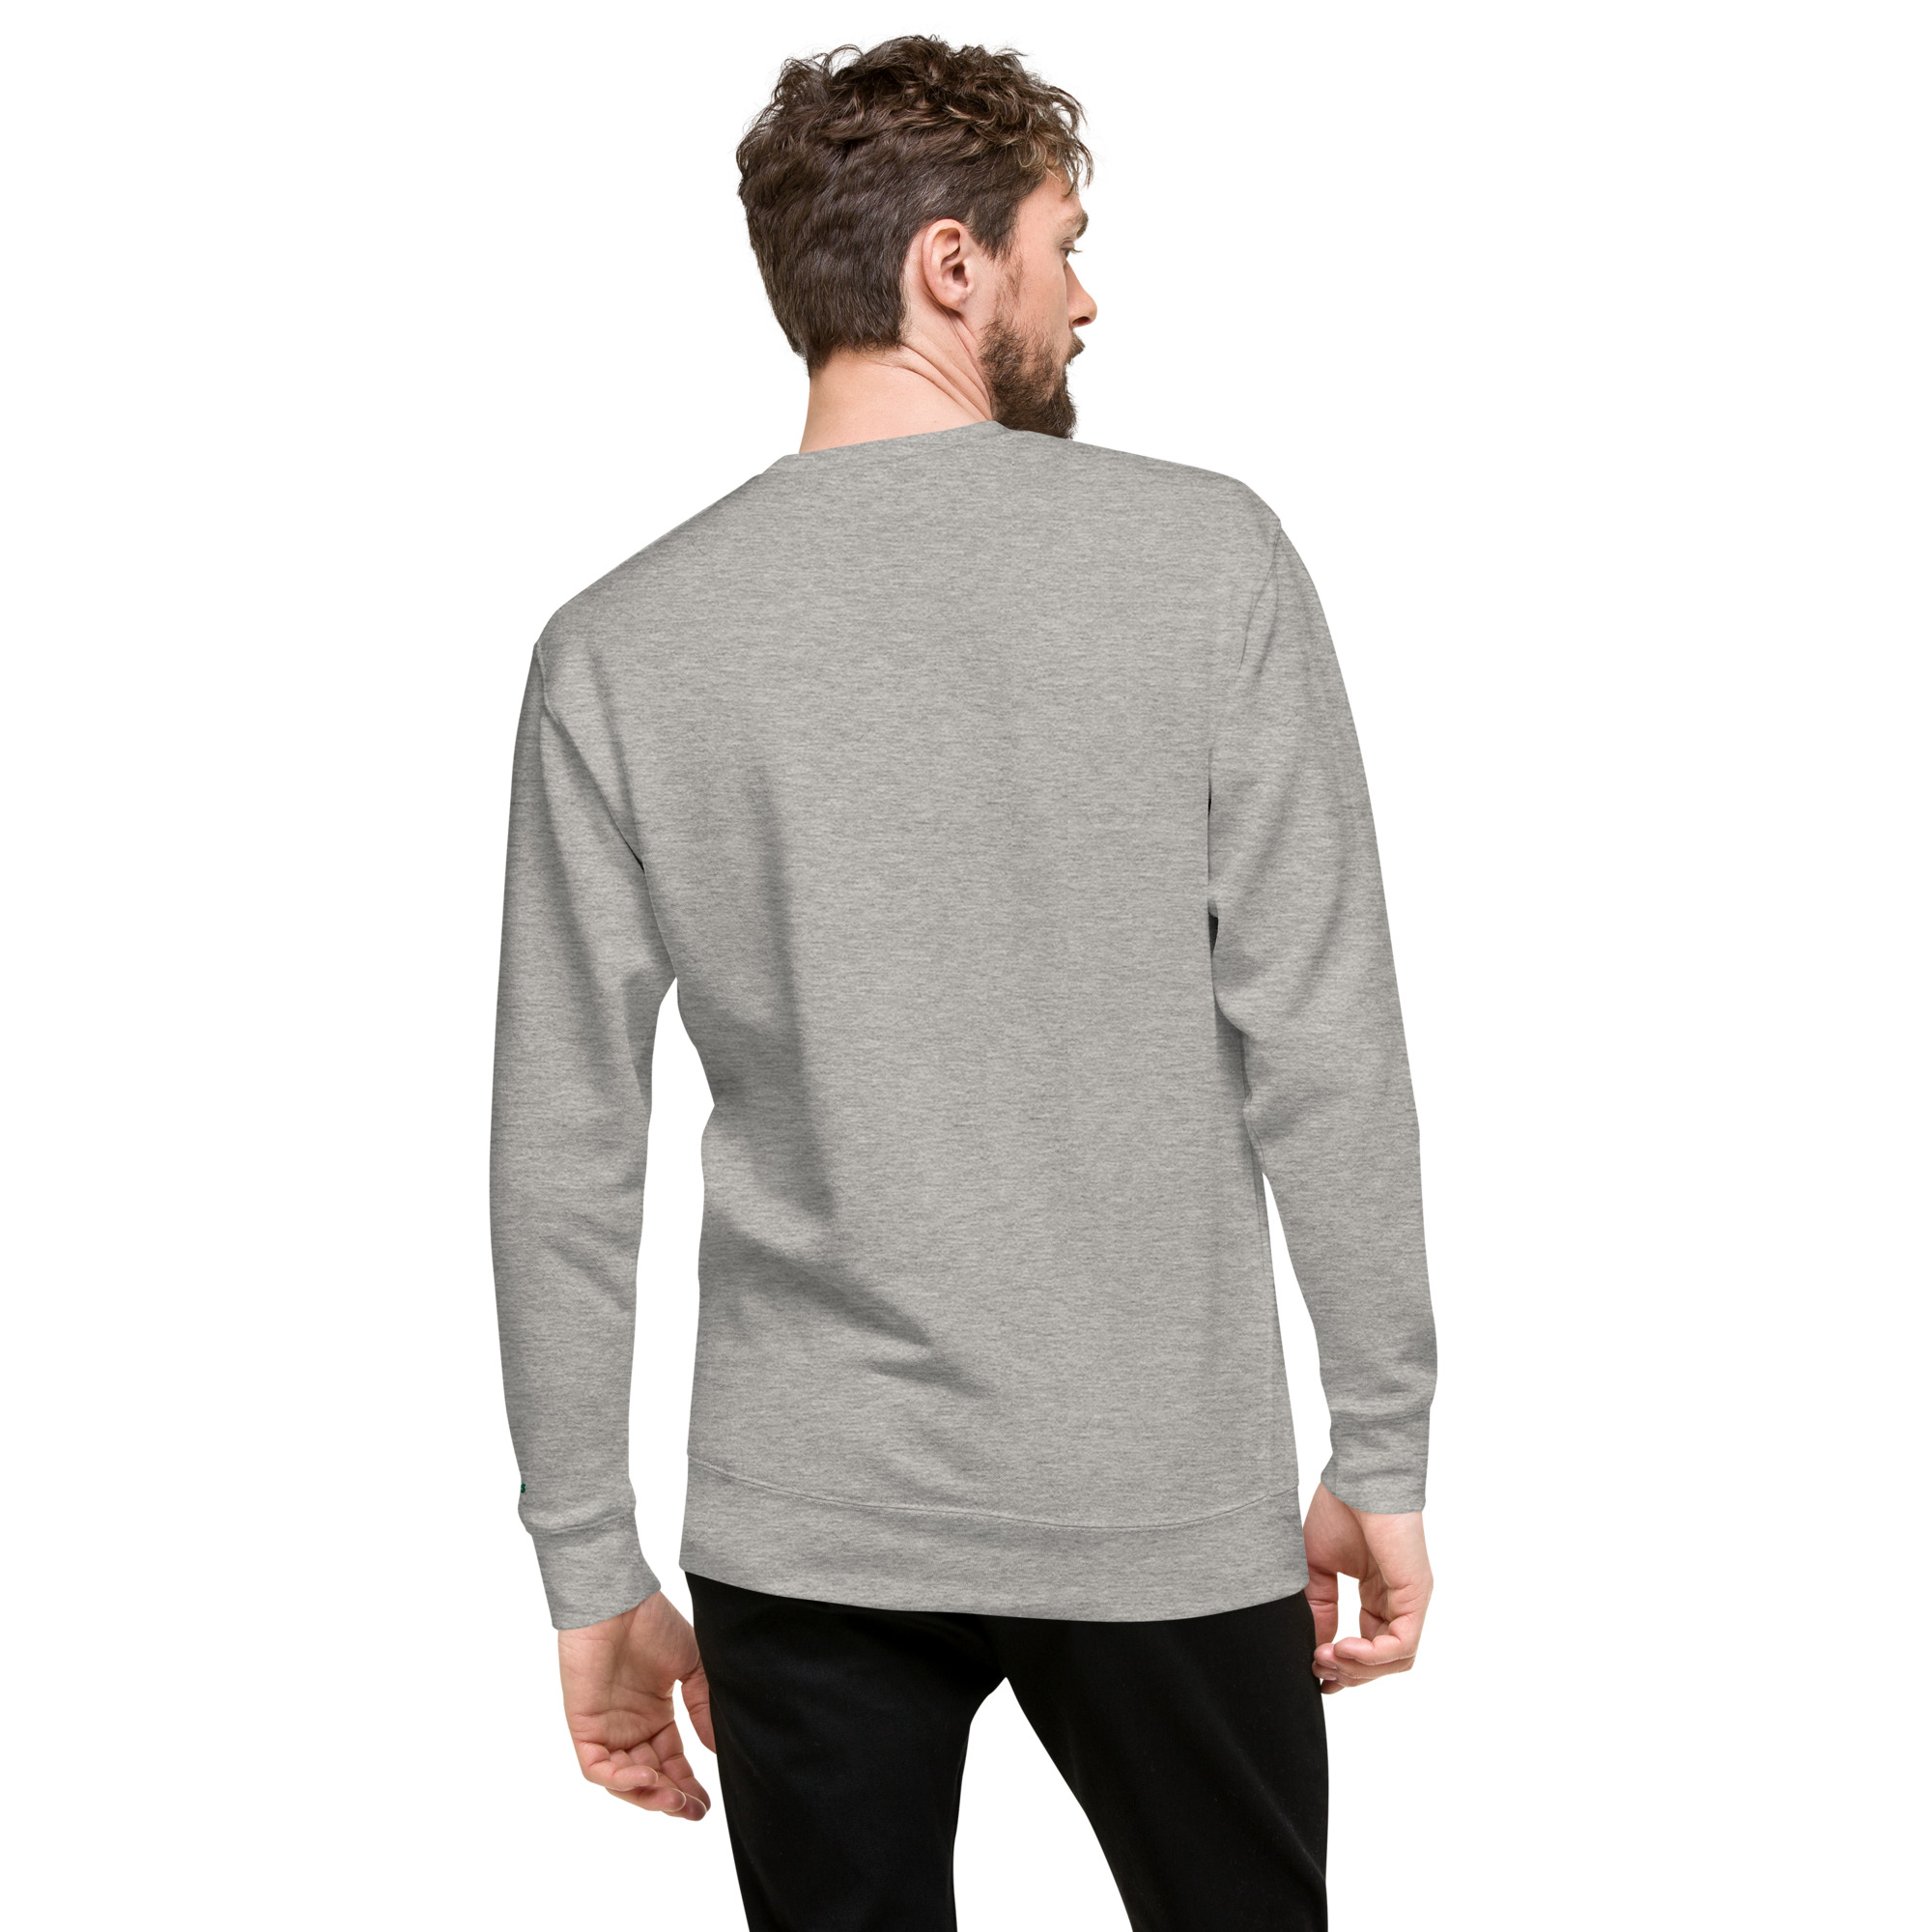 unisex-premium-sweatshirt-carbon-grey-back-63f12f05663a3.jpg